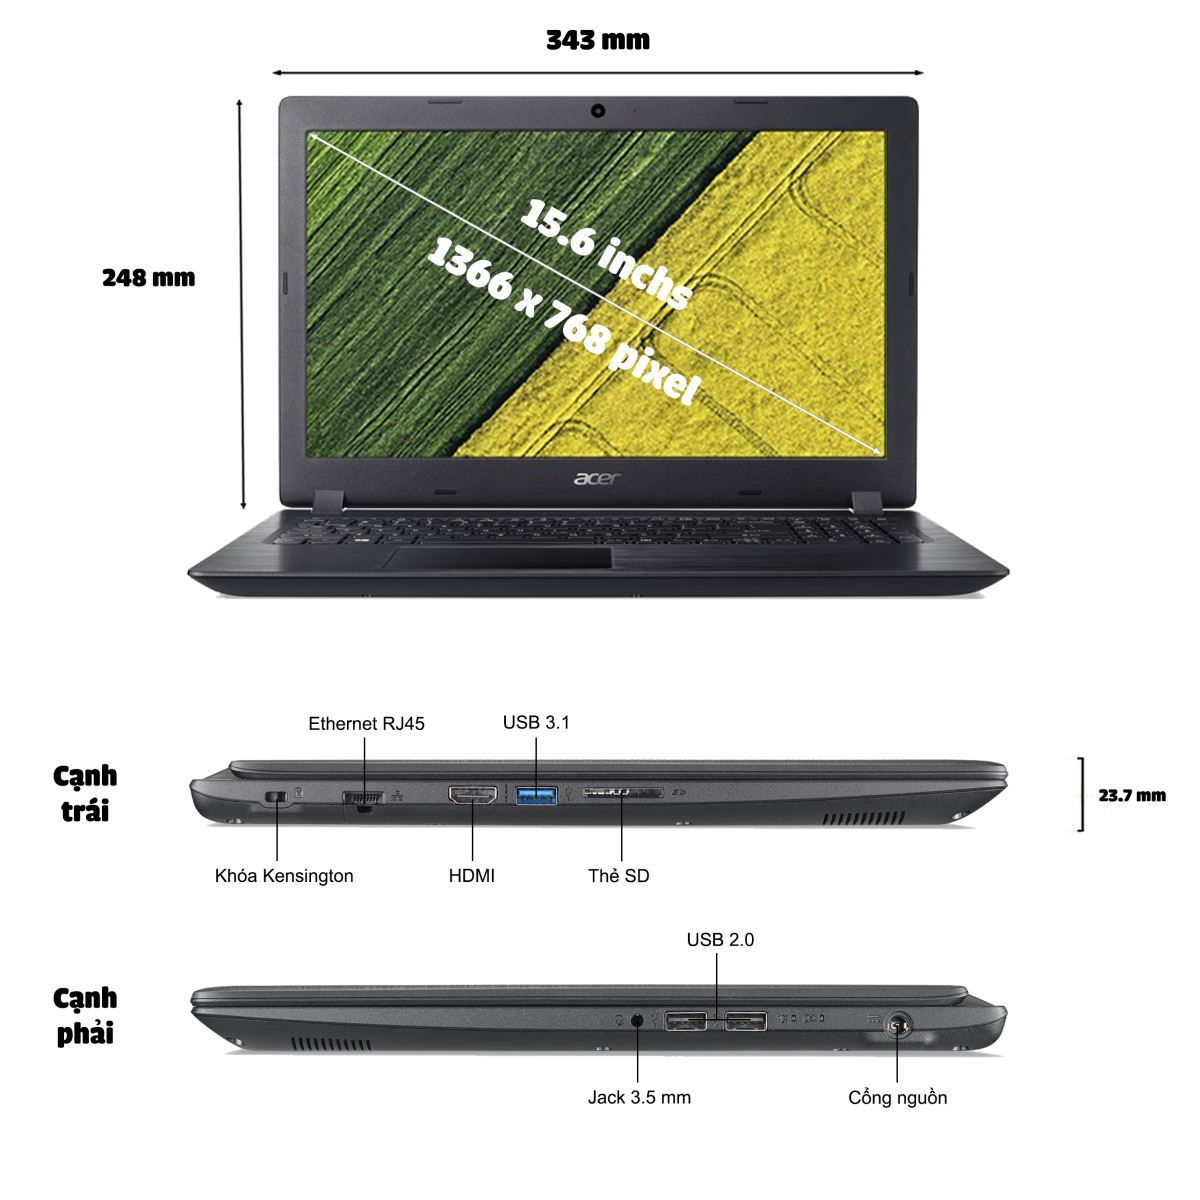 Acer A315-53G-5790 NX.H1ASV.001 phù hợp cho nhiều đối tượng sử dụng